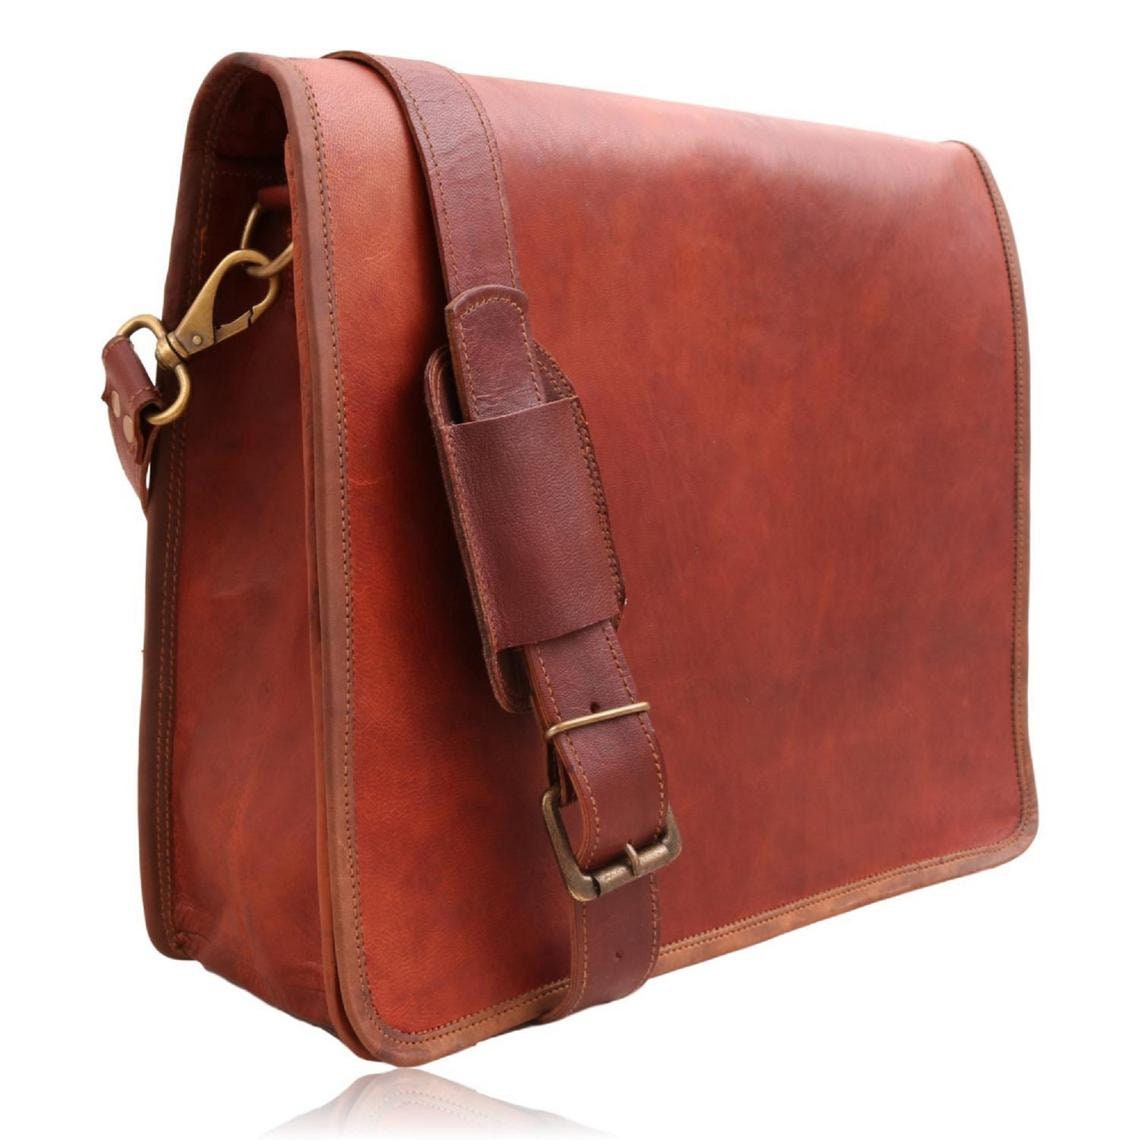 Mens soft leather messenger bag